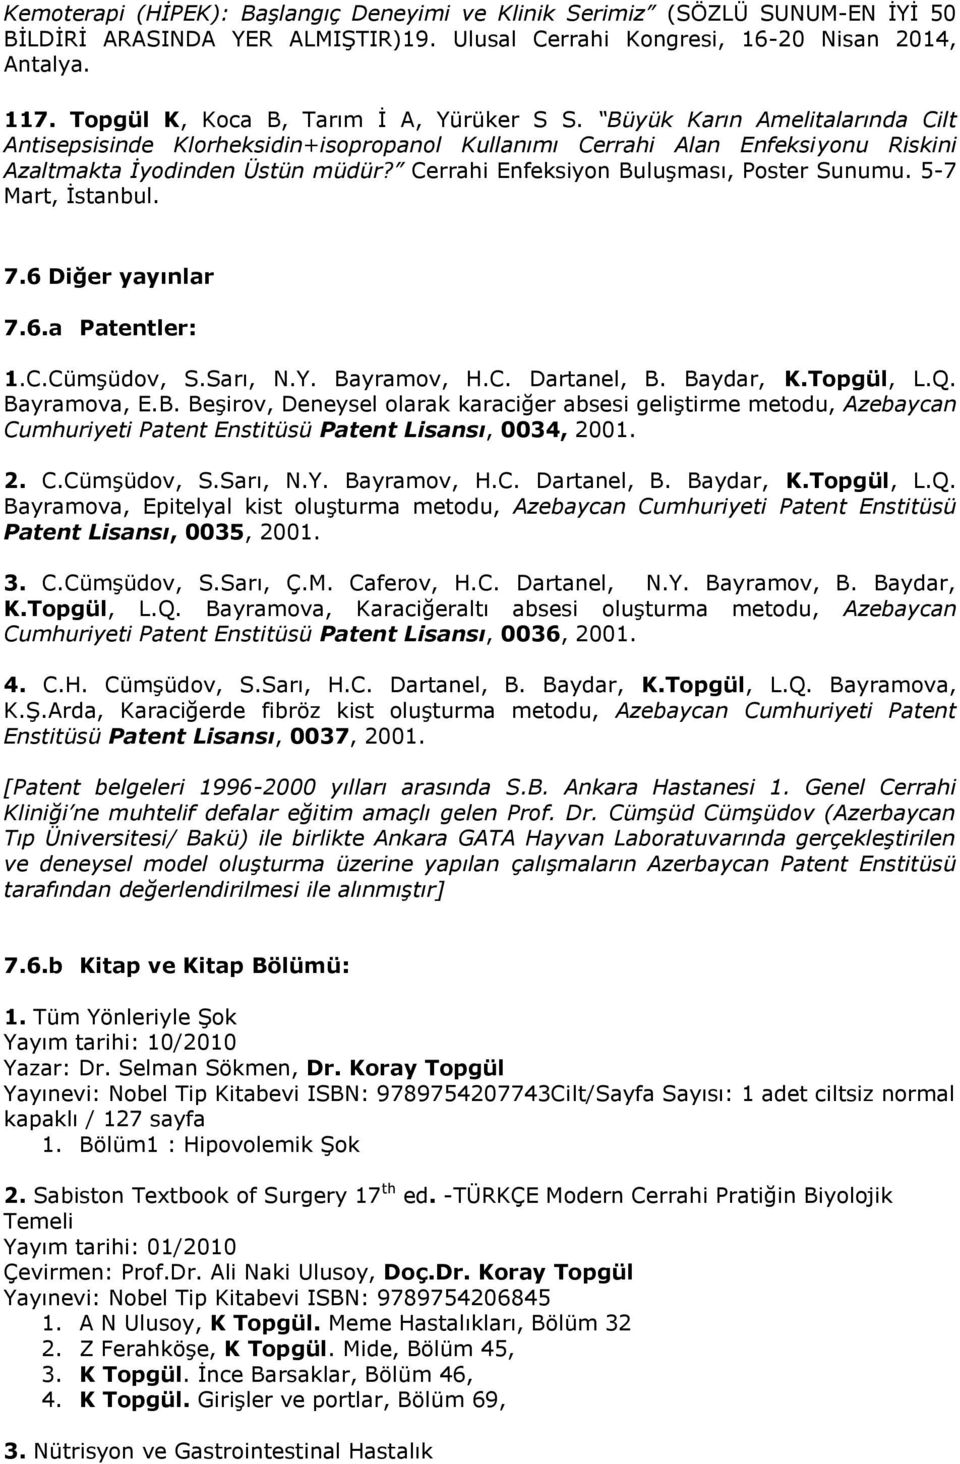 Cerrahi Enfeksiyon Buluşması, Poster Sunumu. 5-7 Mart, İstanbul. 7.6 Diğer yayınlar 7.6.a Patentler: 1.C.Cümşüdov, S.Sarı, N.Y. Bayramov, H.C. Dartanel, B. Baydar, K.Topgül, L.Q. Bayramova, E.B. Beşirov, Deneysel olarak karaciğer absesi geliştirme metodu, Azebaycan Cumhuriyeti Patent Enstitüsü Patent Lisansı, 0034, 2001.